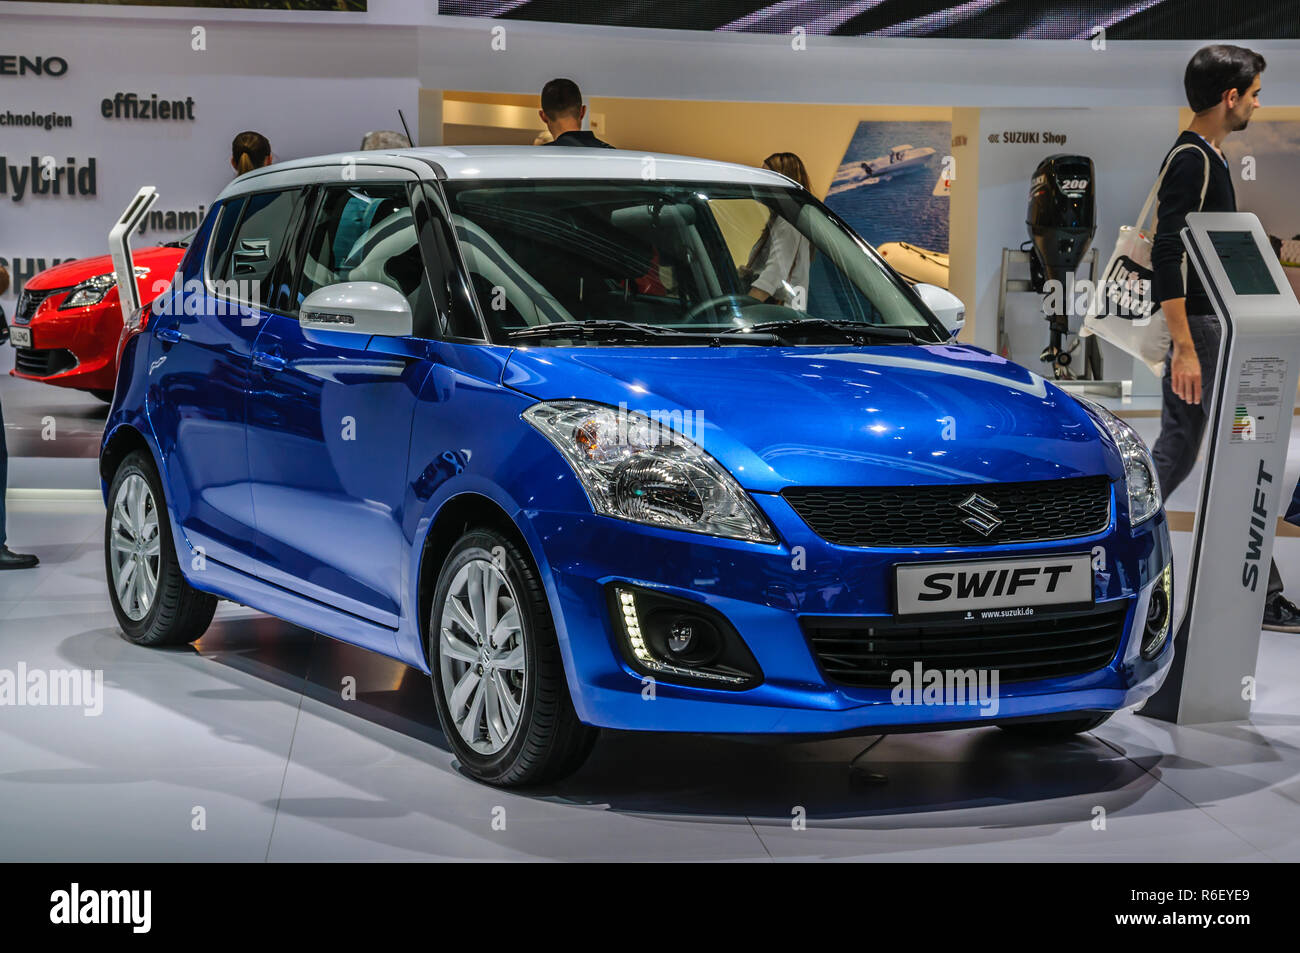 Francfort - Sept 2015 : Suzuki Swift présenté à l'IAA International Motor Show le 20 septembre 2015 à Francfort, Allemagne Banque D'Images